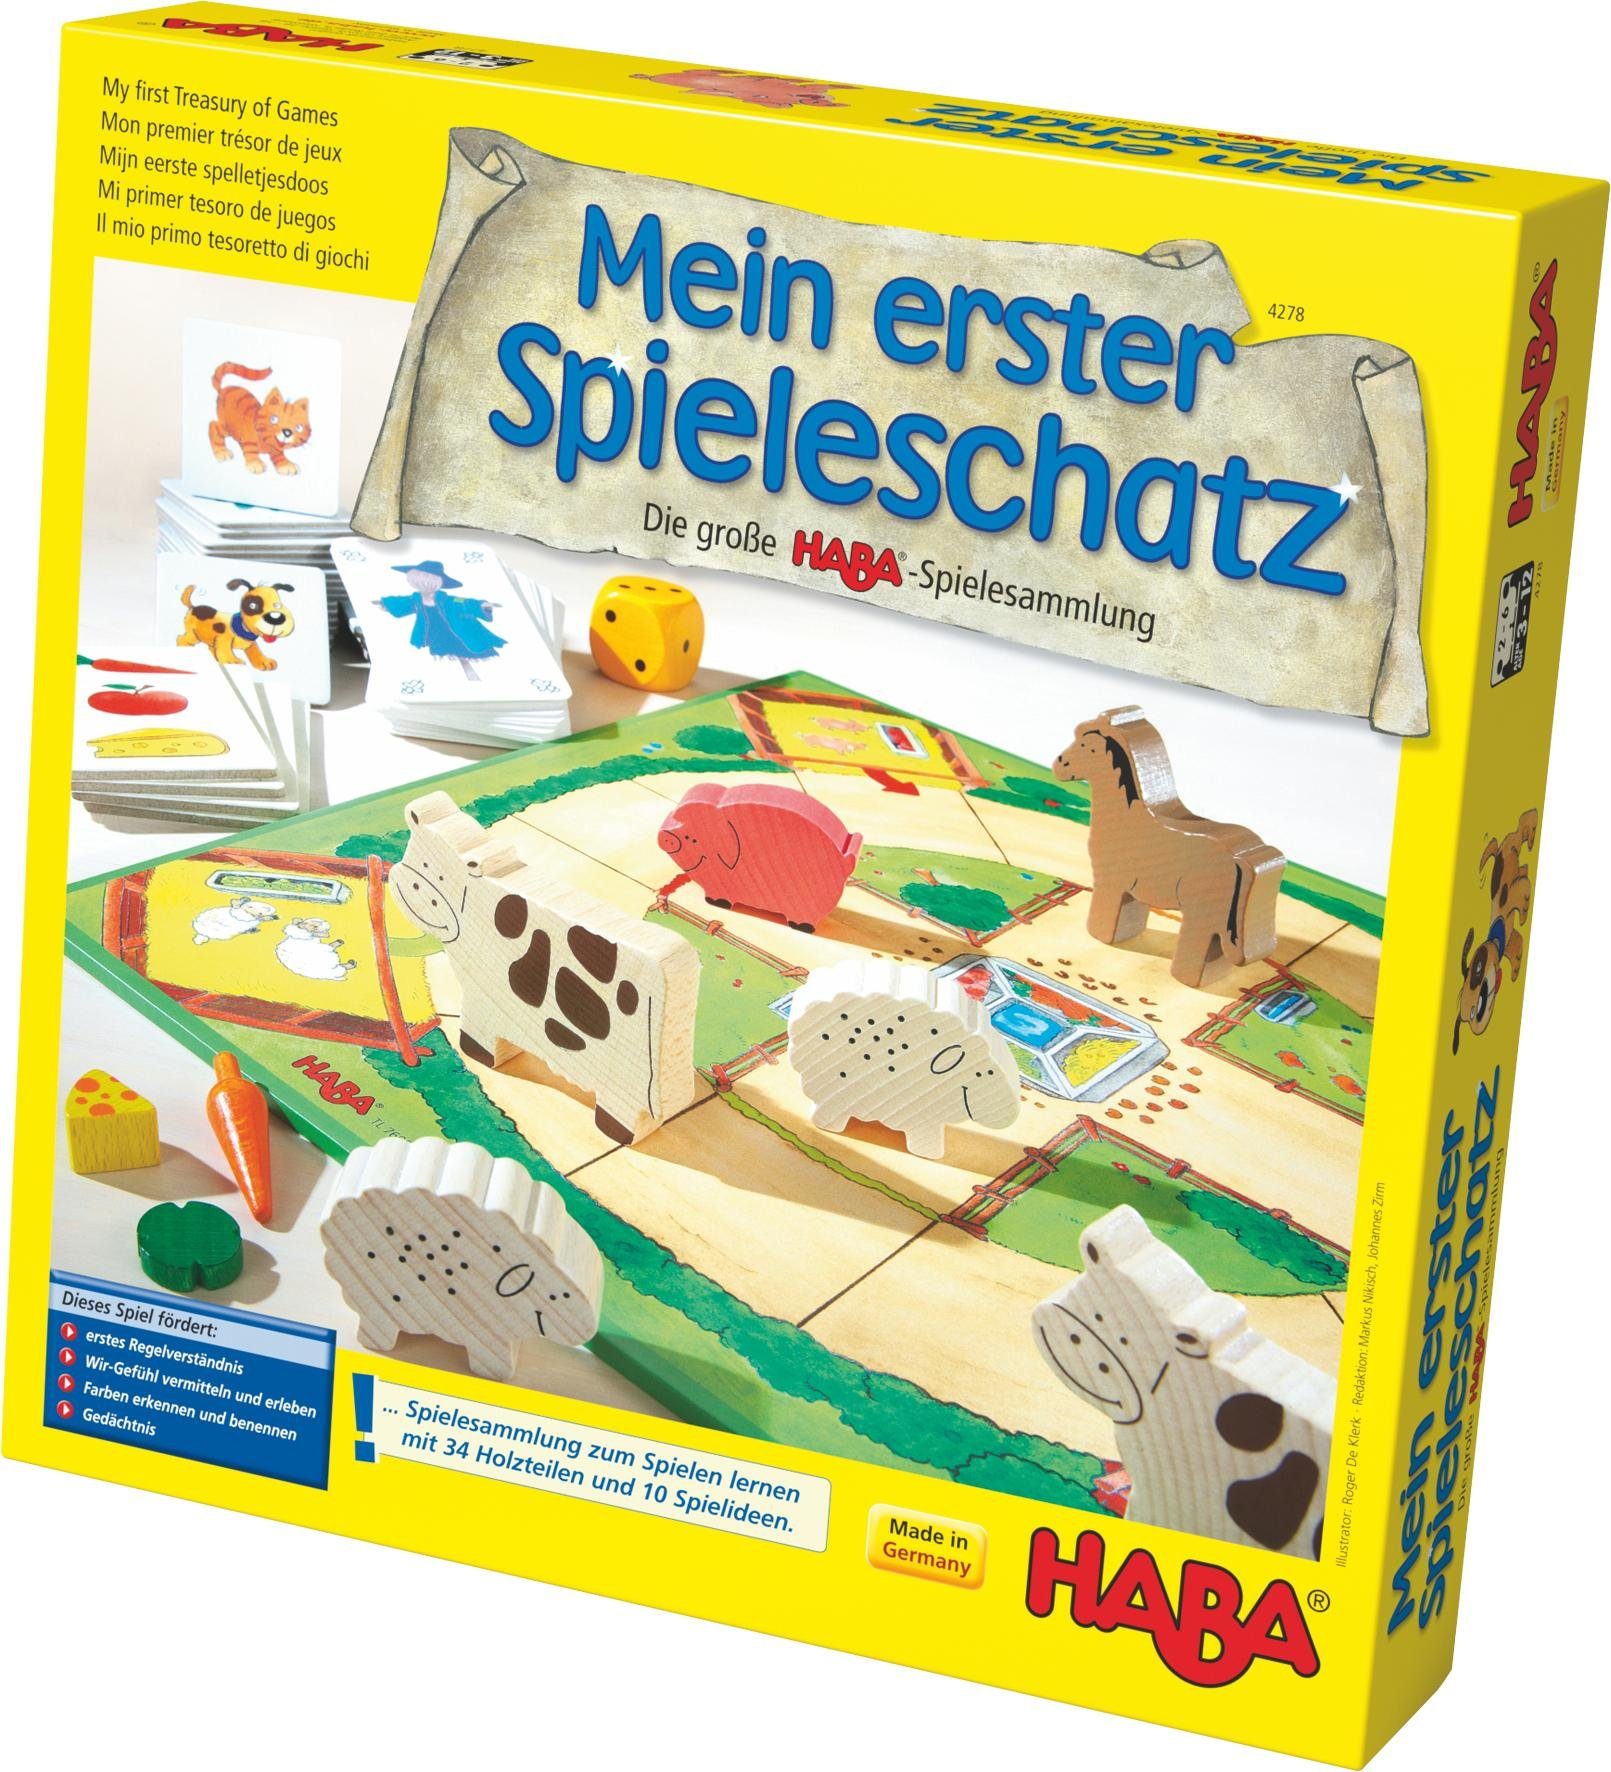 Haba Spielesammlung, Mein erster Spieleschatz, Made in Germany